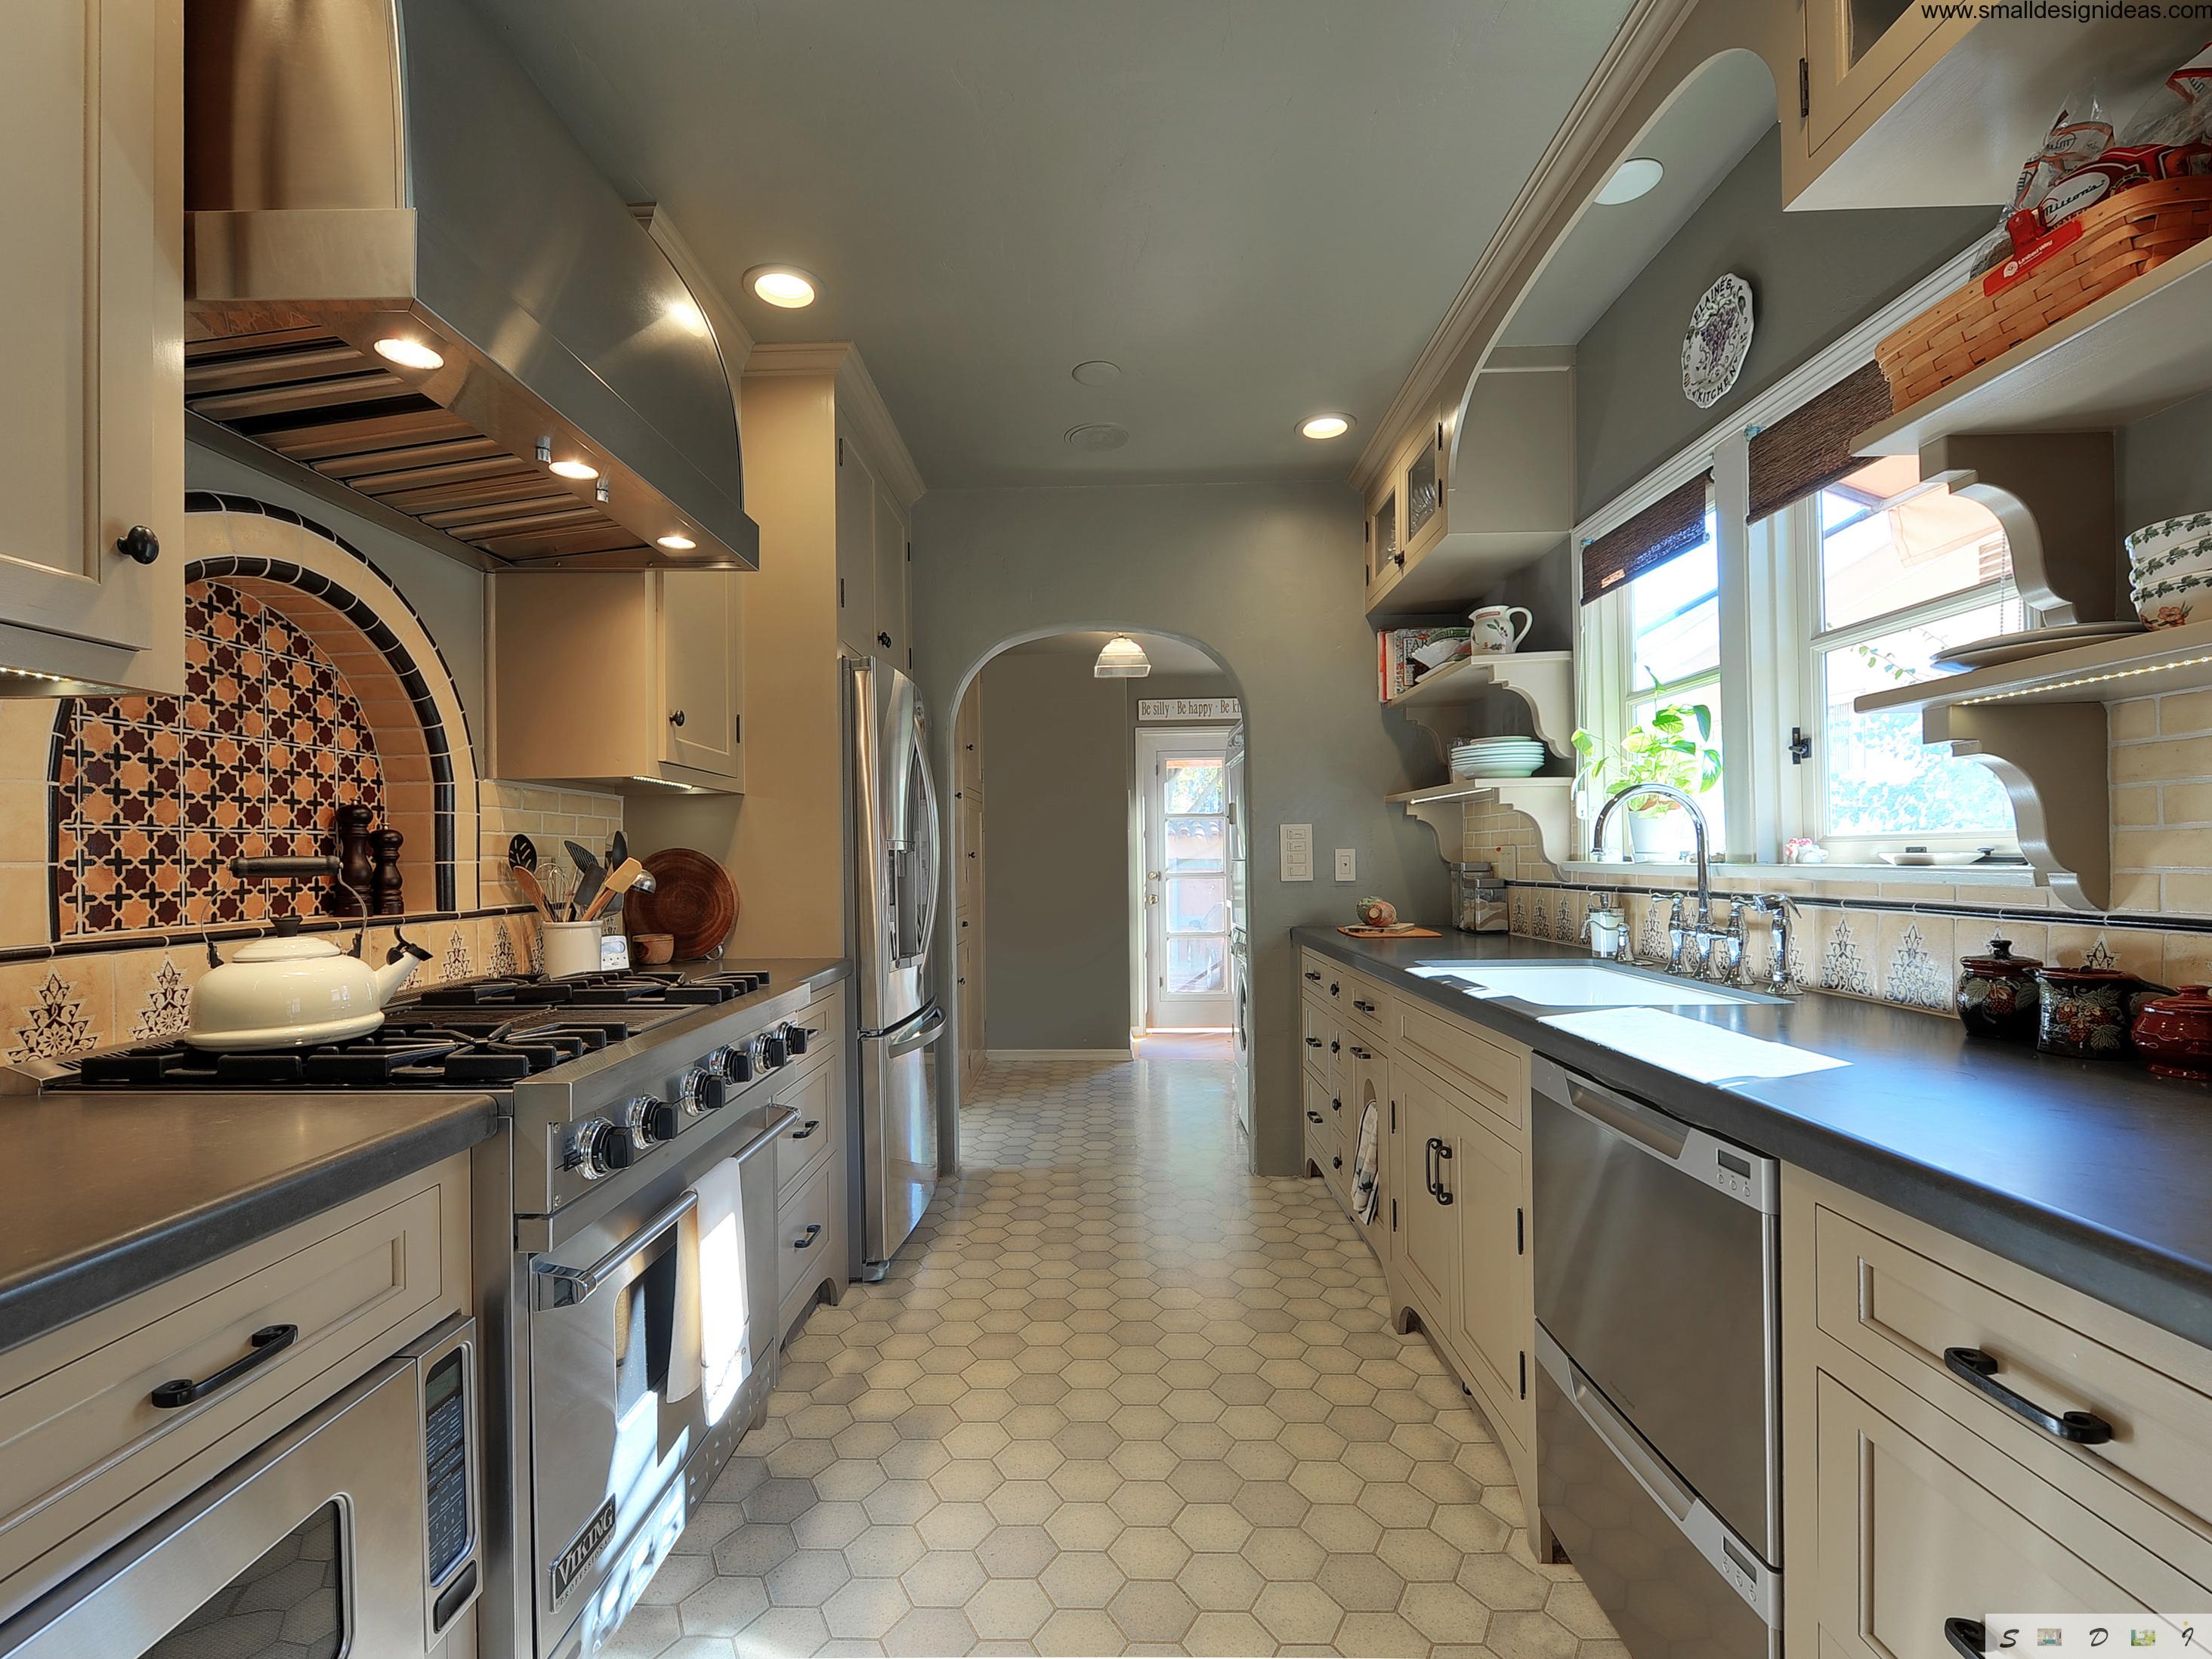 kitchen design layout idea galley kitchen